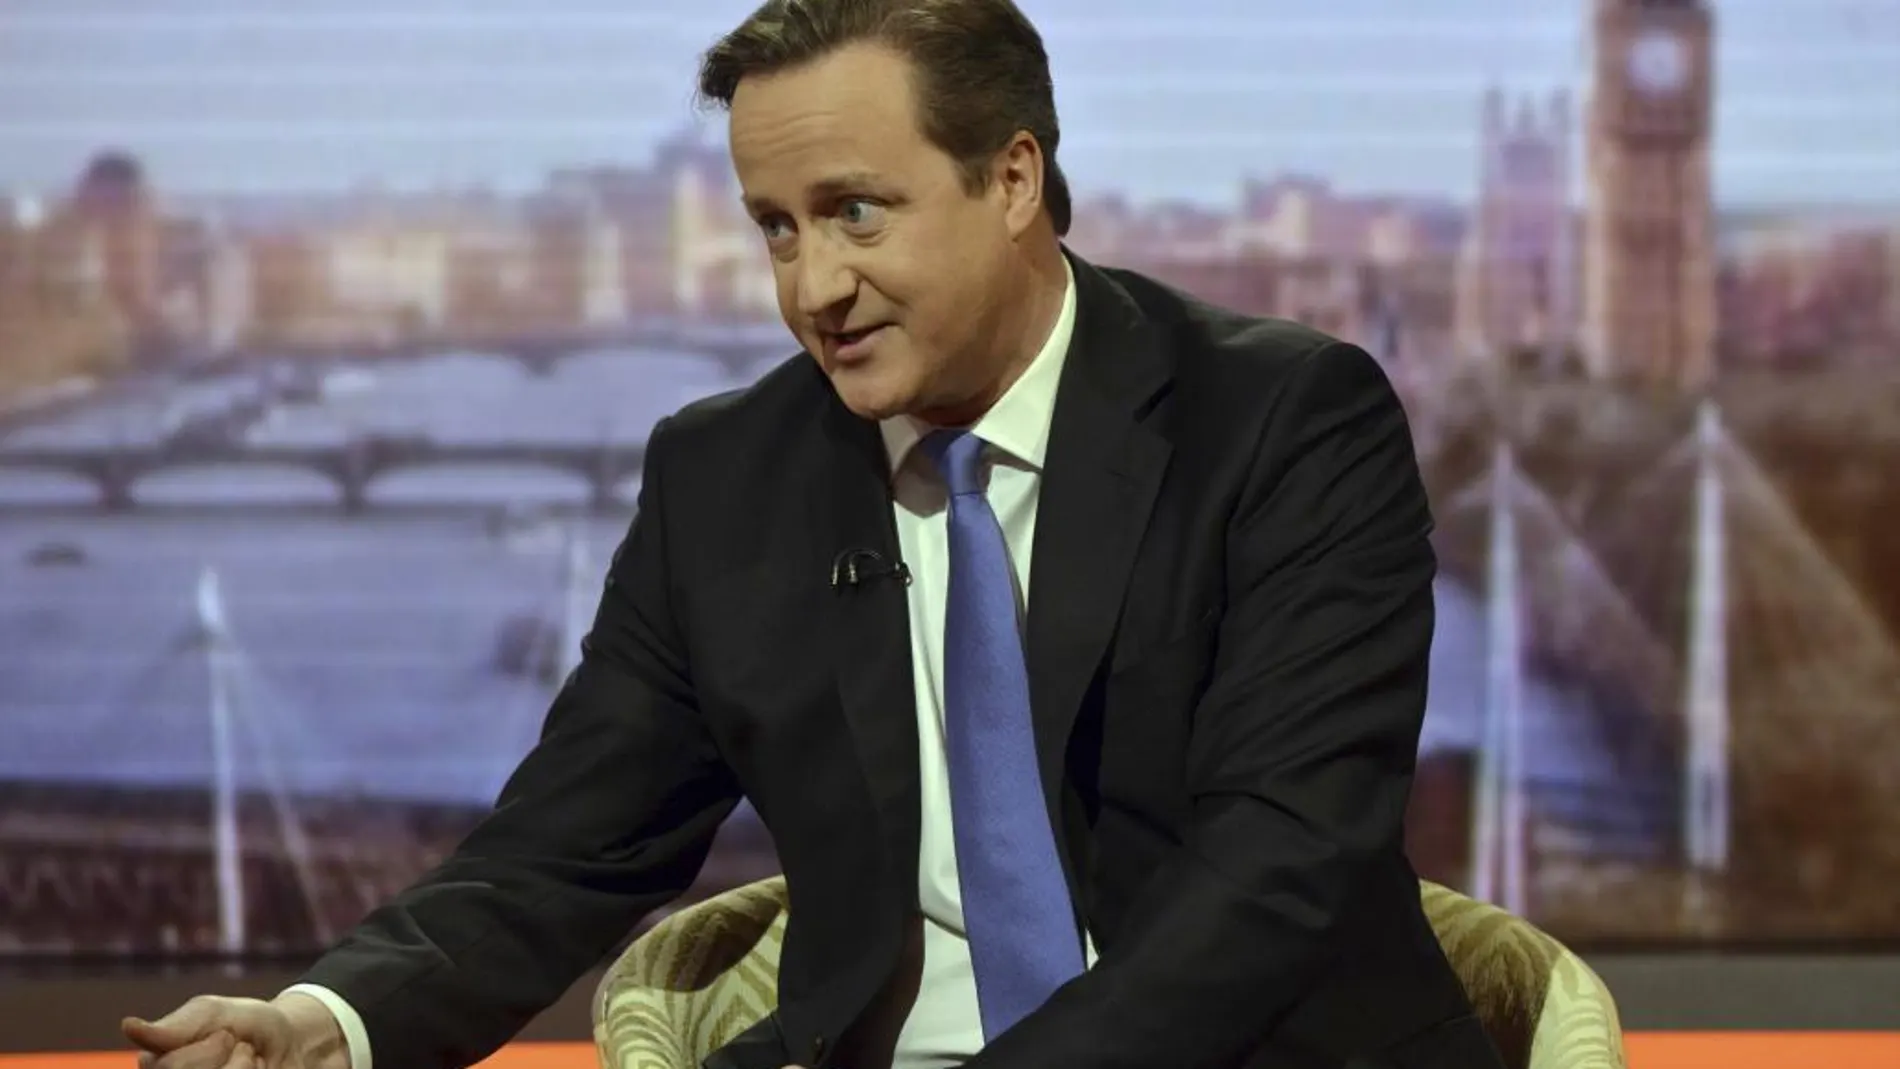 El Primer Ministro británico, el conservador David Cameron